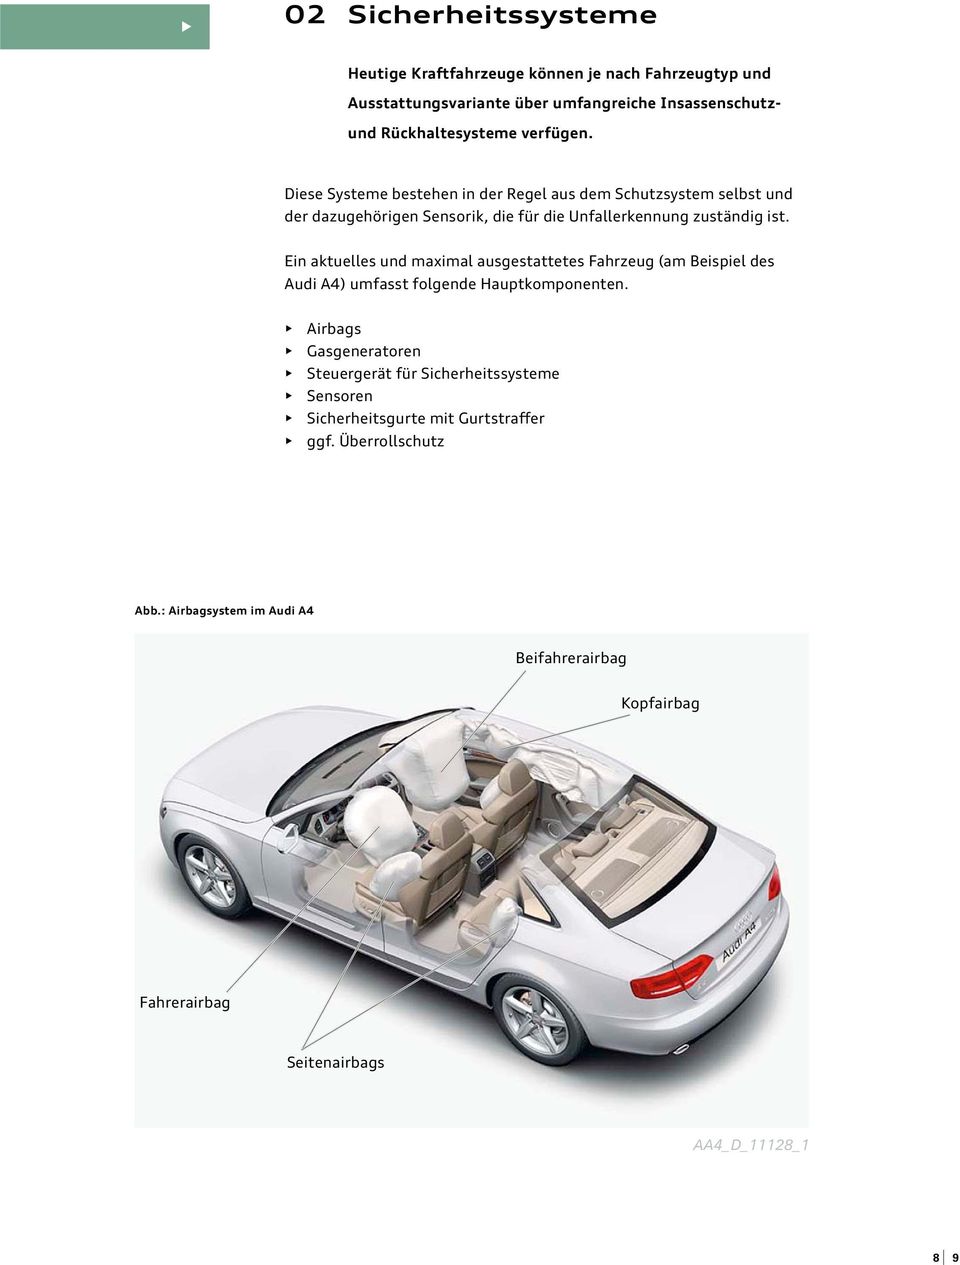 Ein aktuelles und maximal ausgestattetes Fahrzeug (am Beispiel des Audi A4) umfasst folgende Hauptkomponenten.